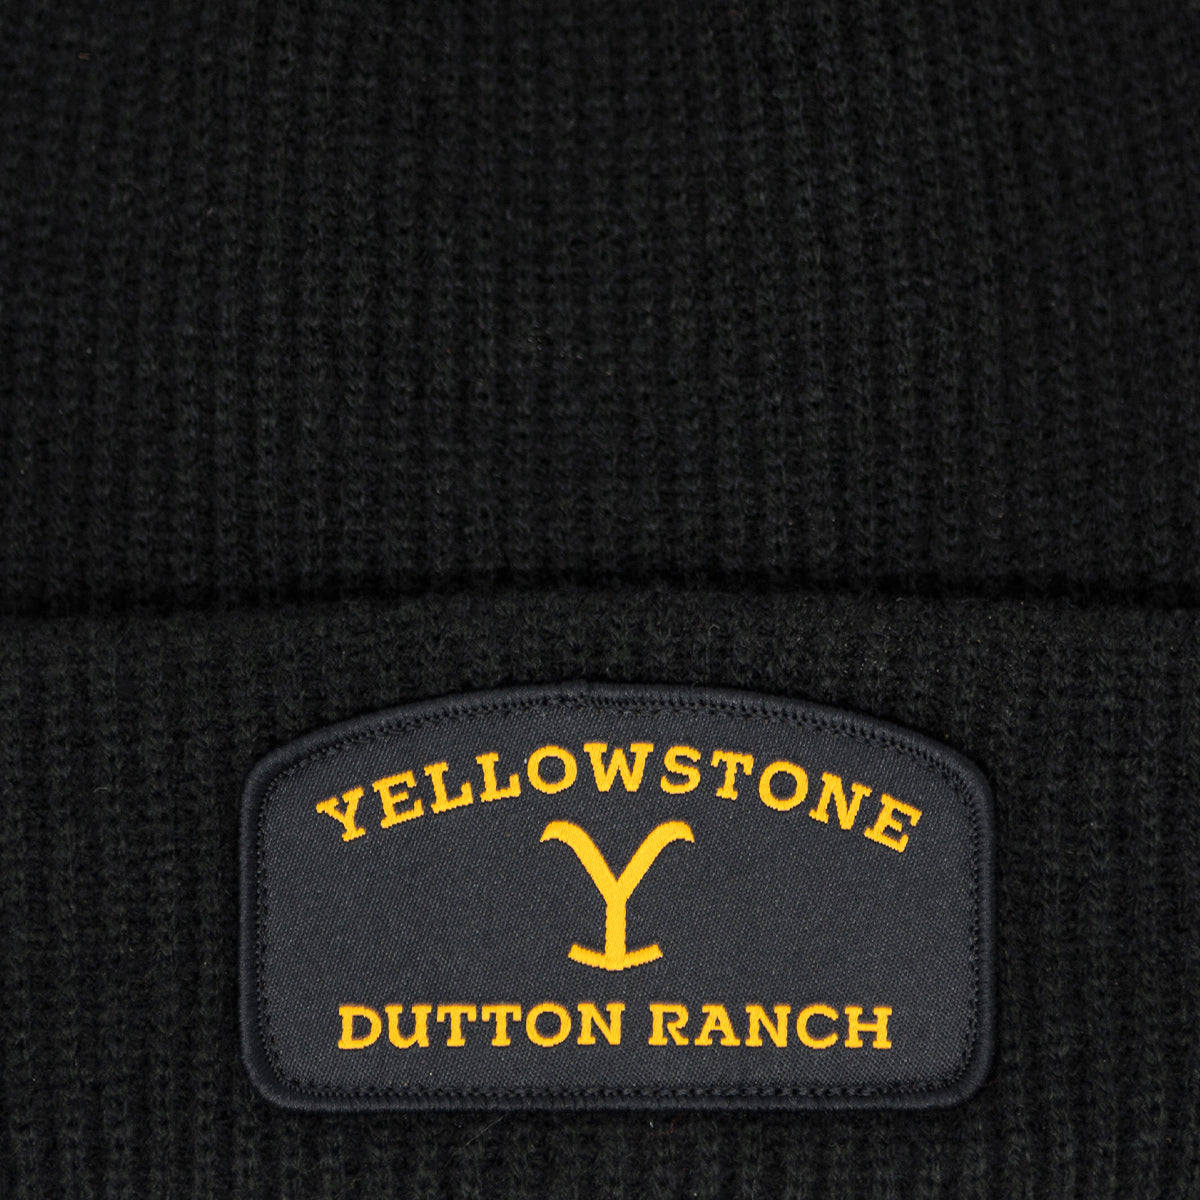 Yellowstone Parche del Rancho Dutton Logo Gorro negro